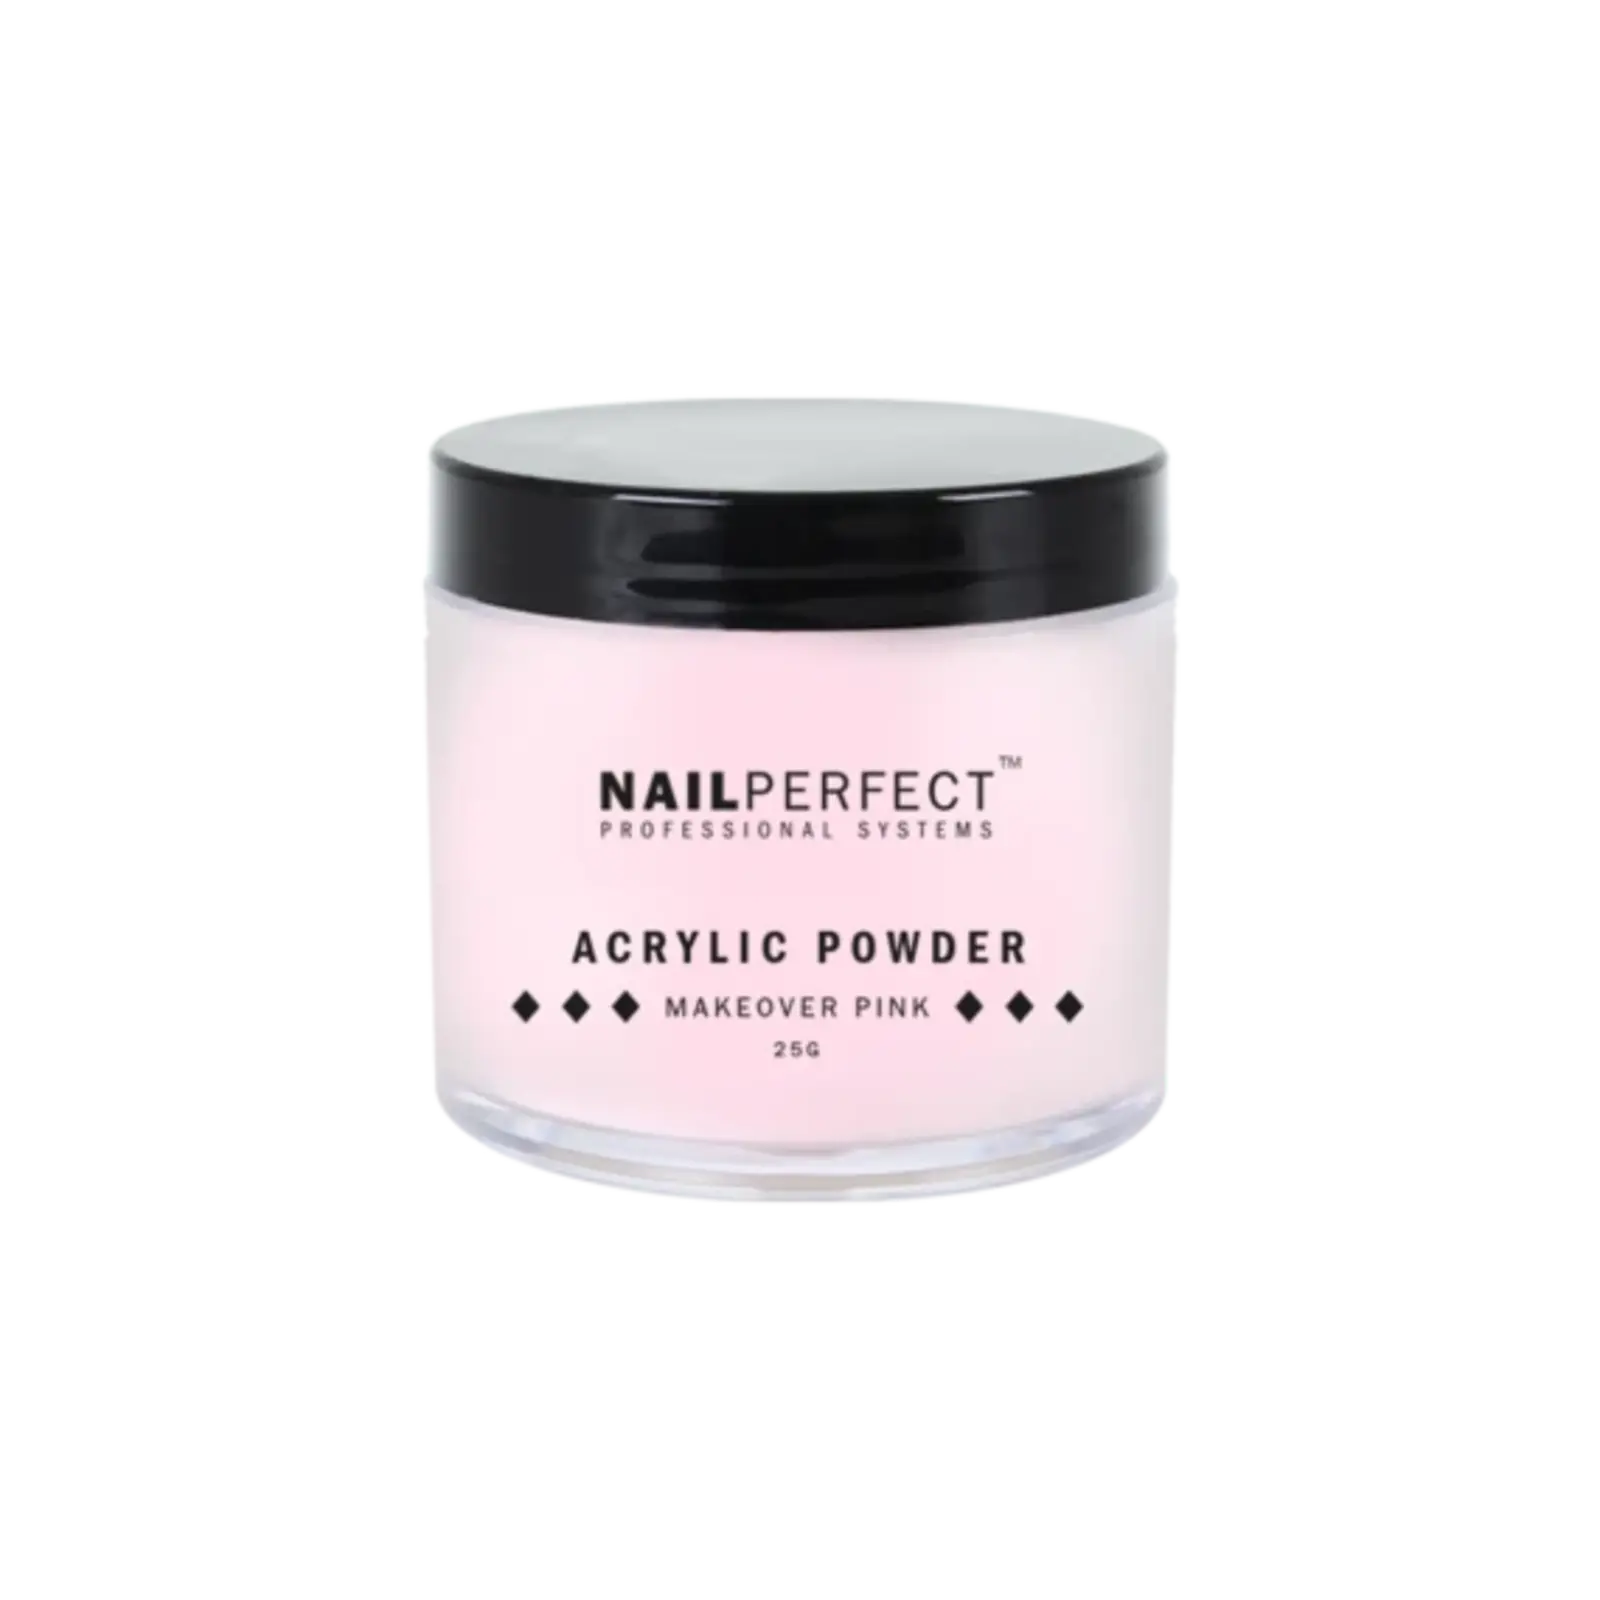 NailPerfect Nail Perfect Acrylic Powder Pink 25gr